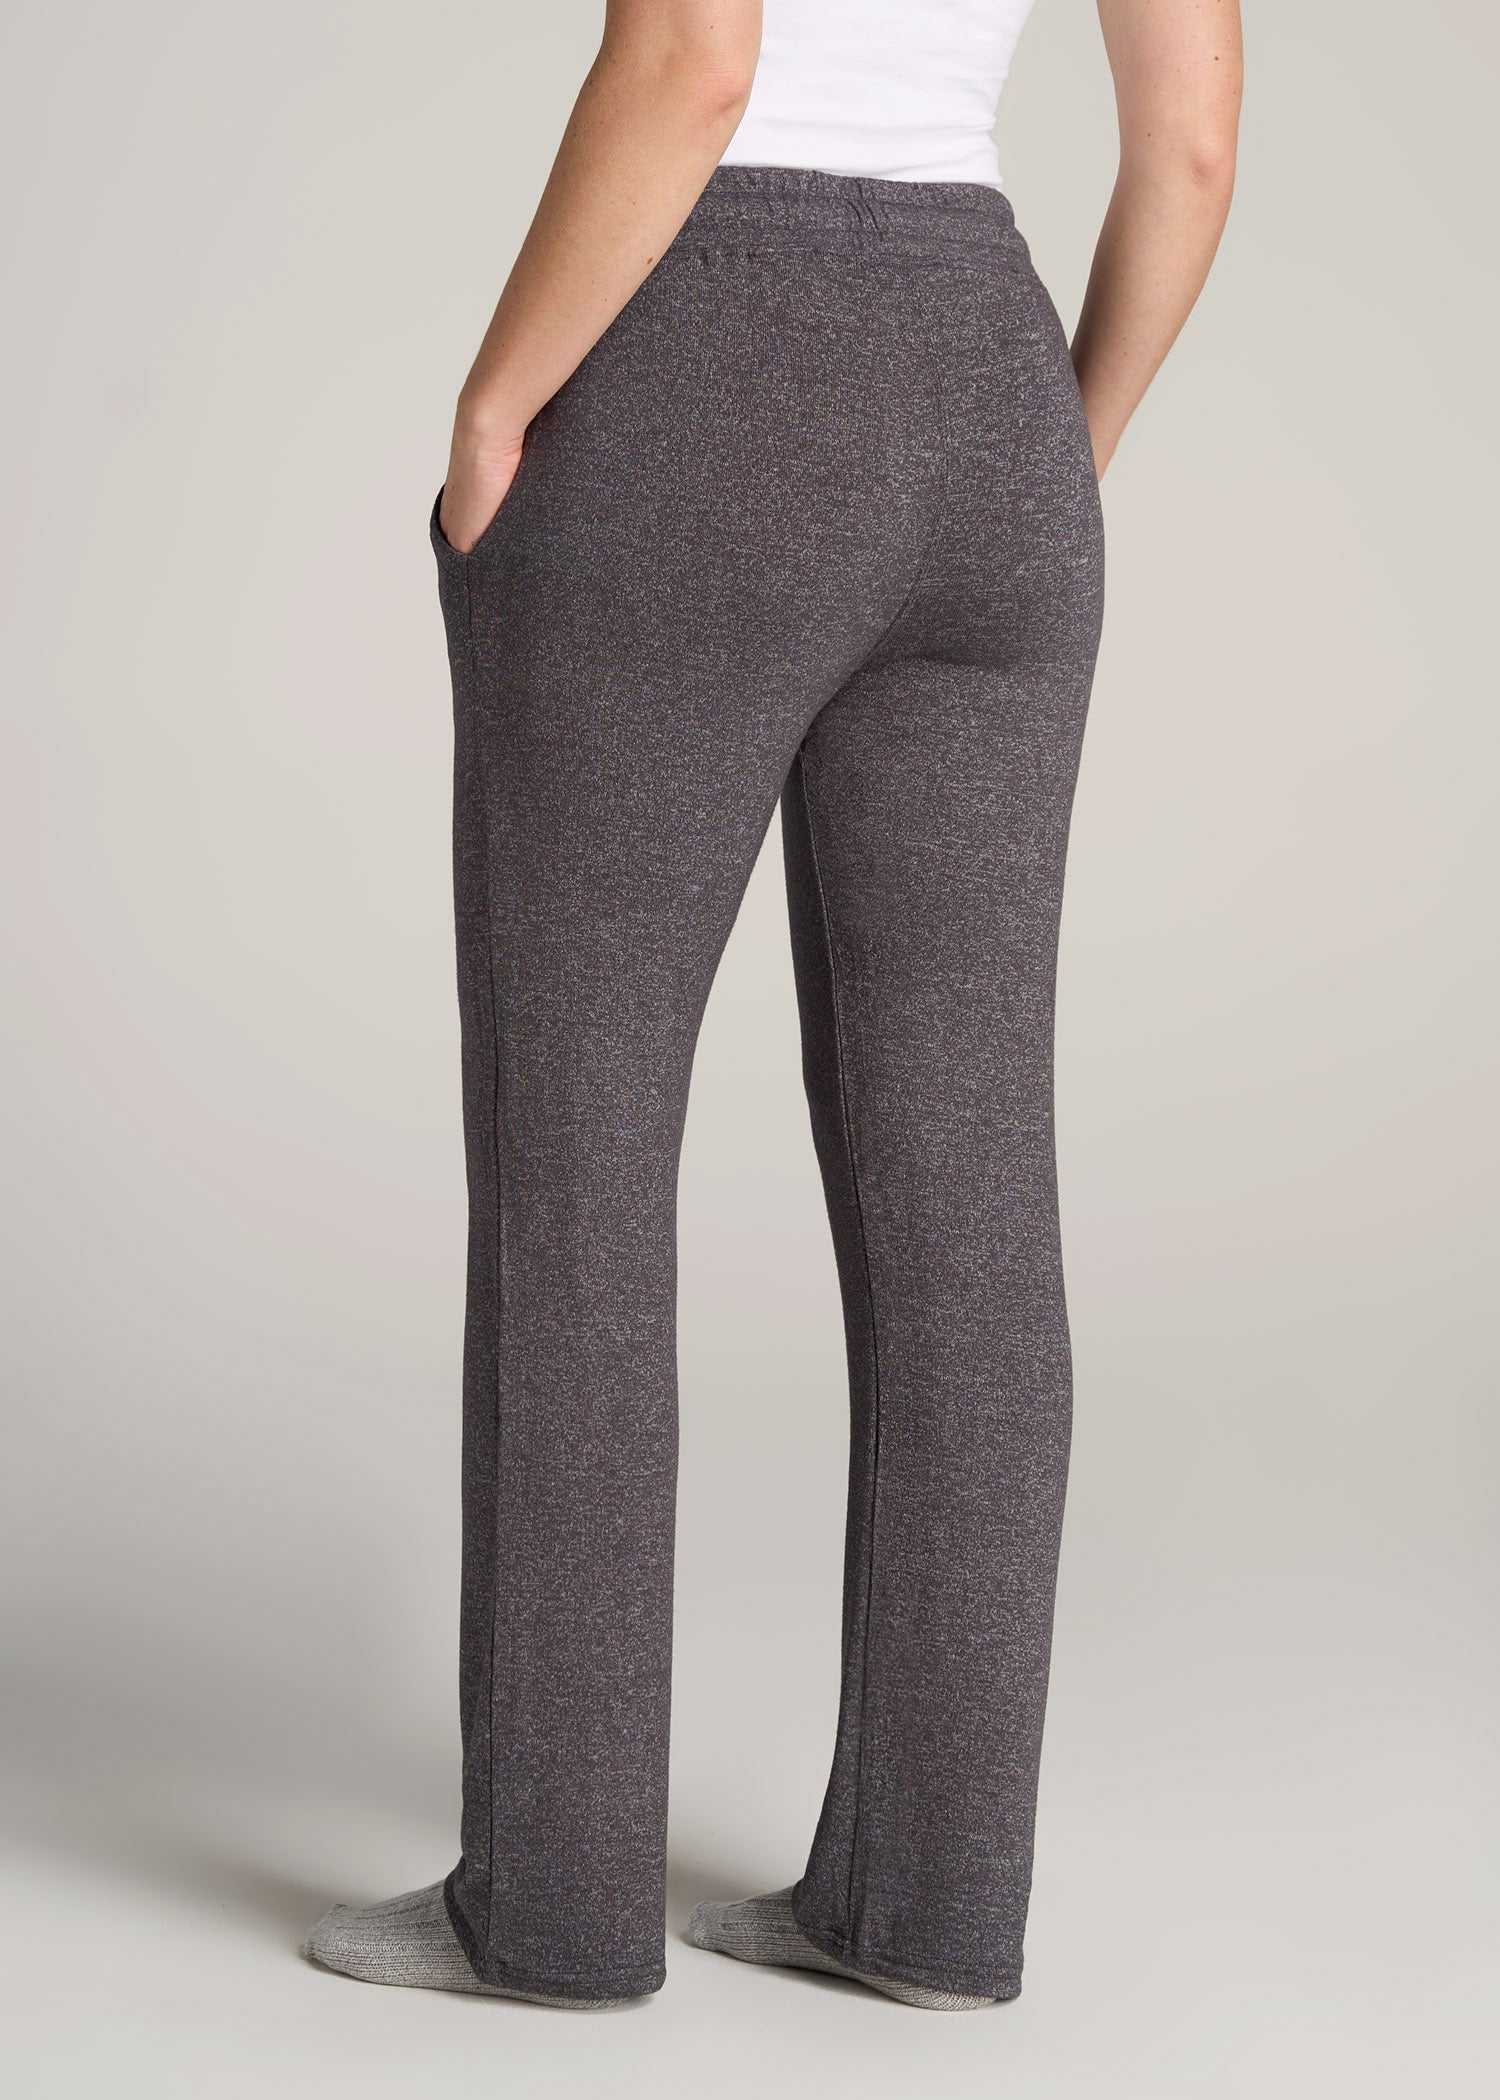 Women's Grey Wide-Leg Pants | Nordstrom